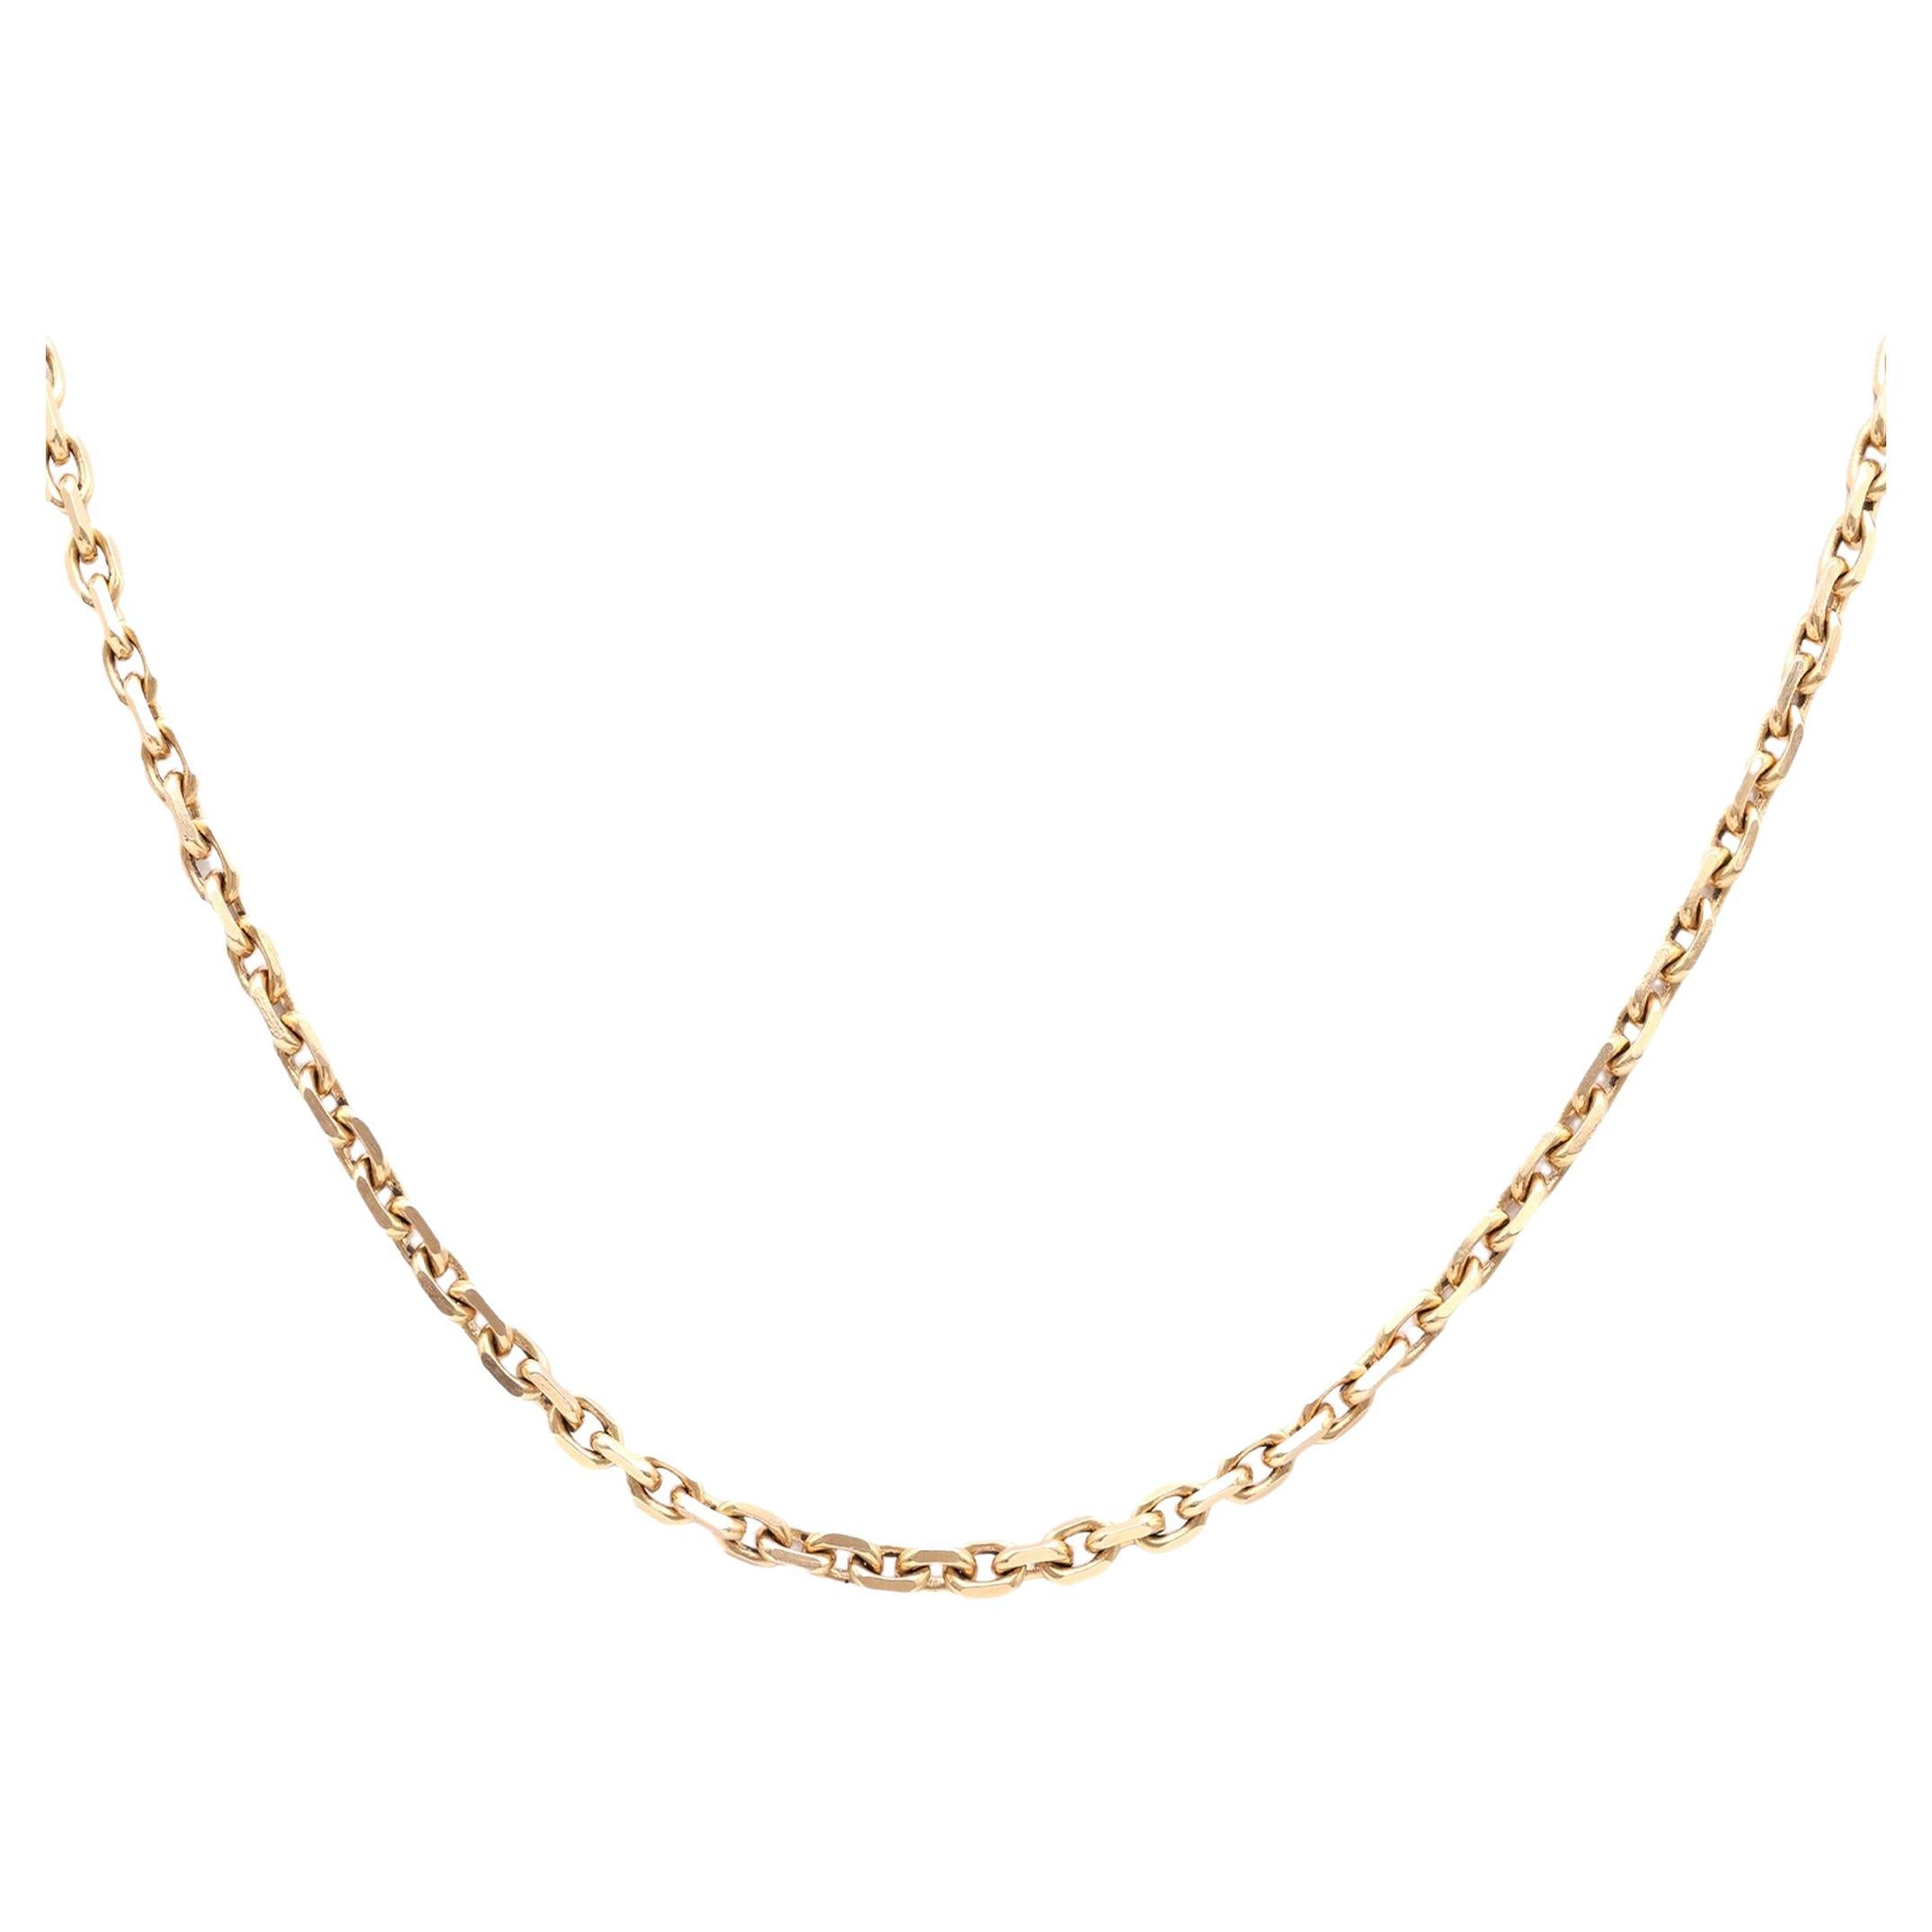 Boucheron Paris Gold Necklace